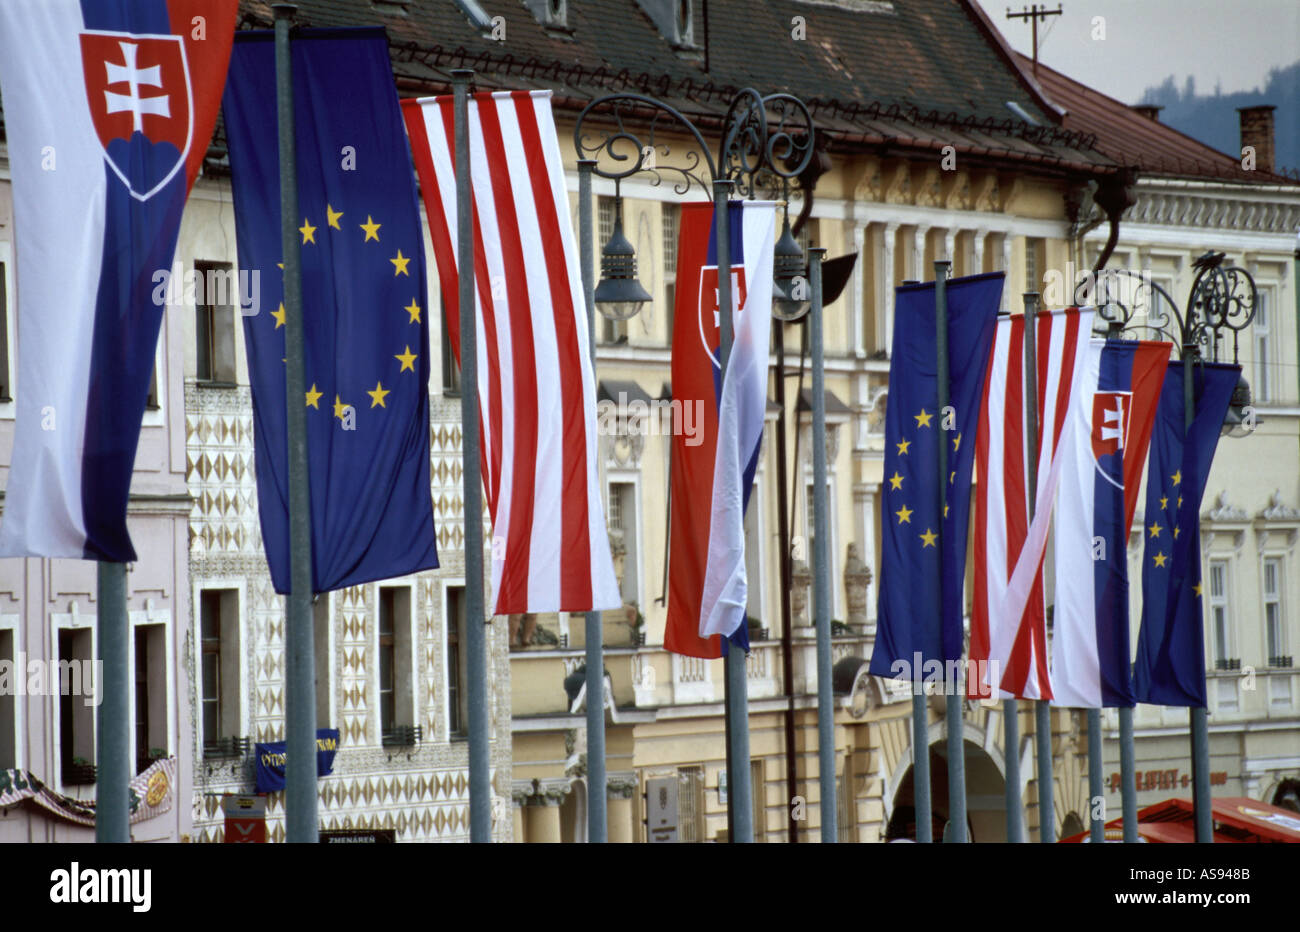 Drapeaux de l'Union européenne à la place de la ville de Banska Bystrica, Slovaquie Banque D'Images